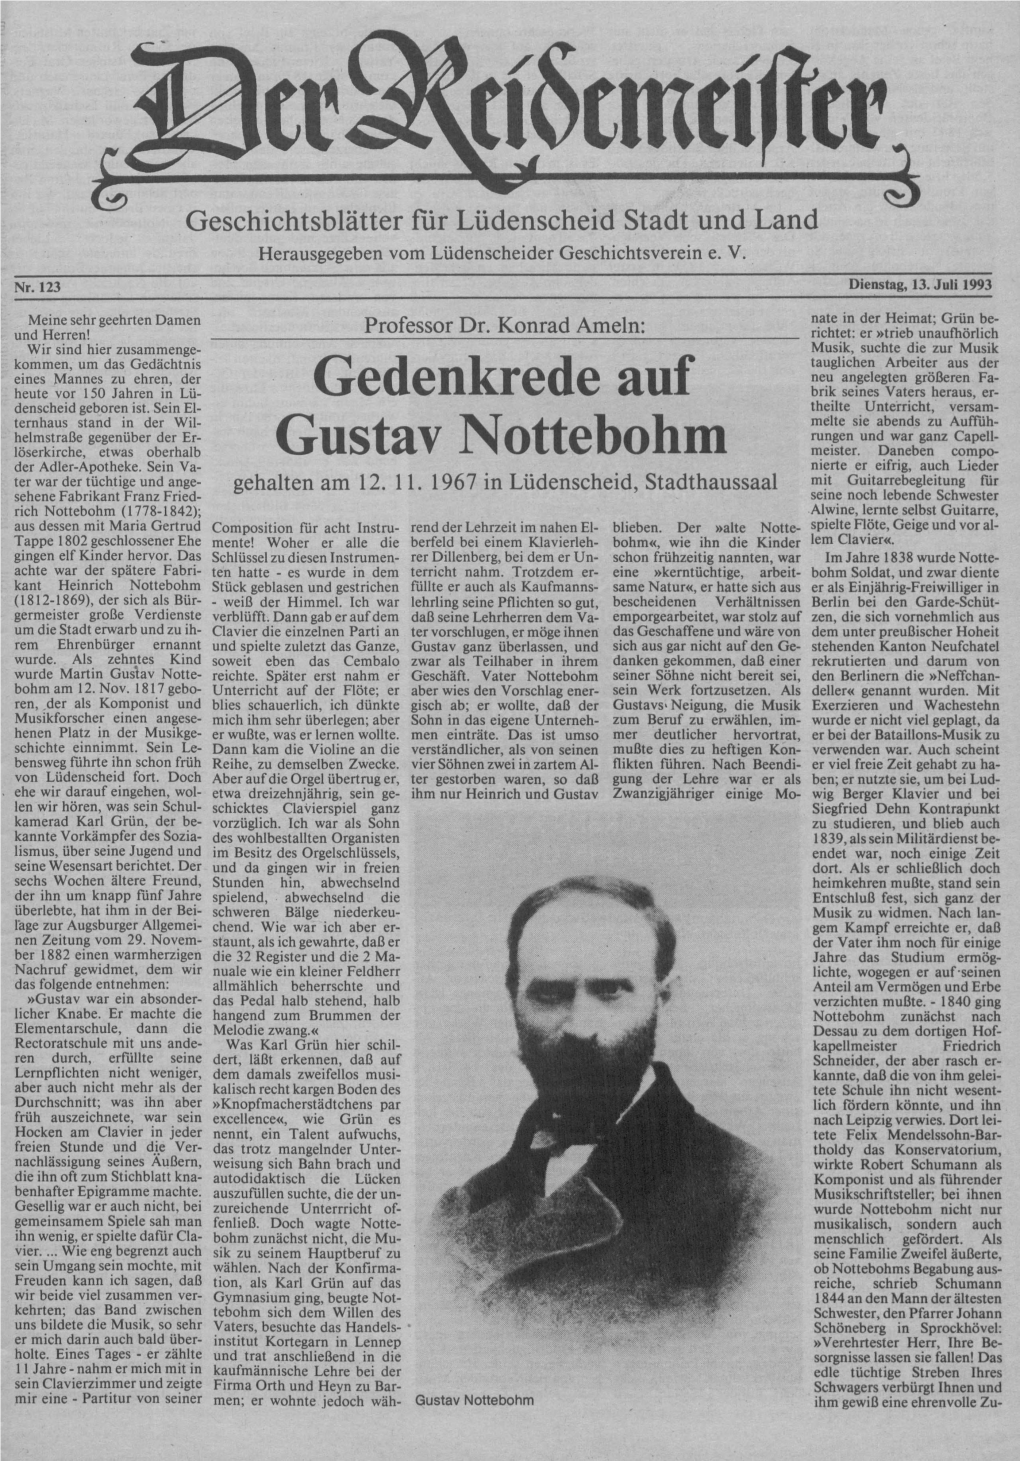 Gedenkrede Auf Gustav Nottebohm